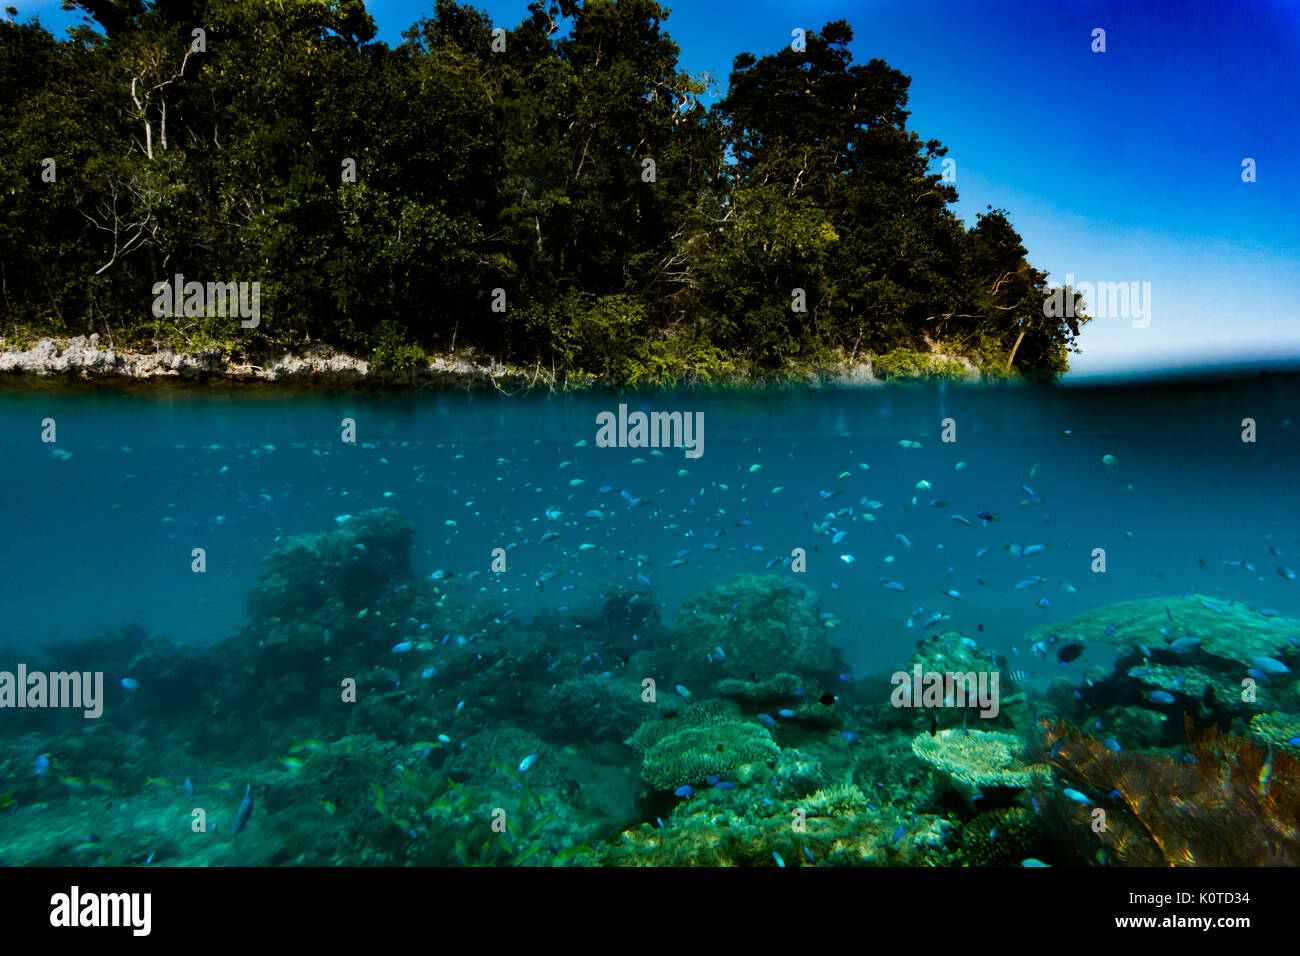 La plongée et la photographie sous-marine dans les formations karstiques de la baie des îles, Vanua Balavu, Lau group, Fiji Banque D'Images